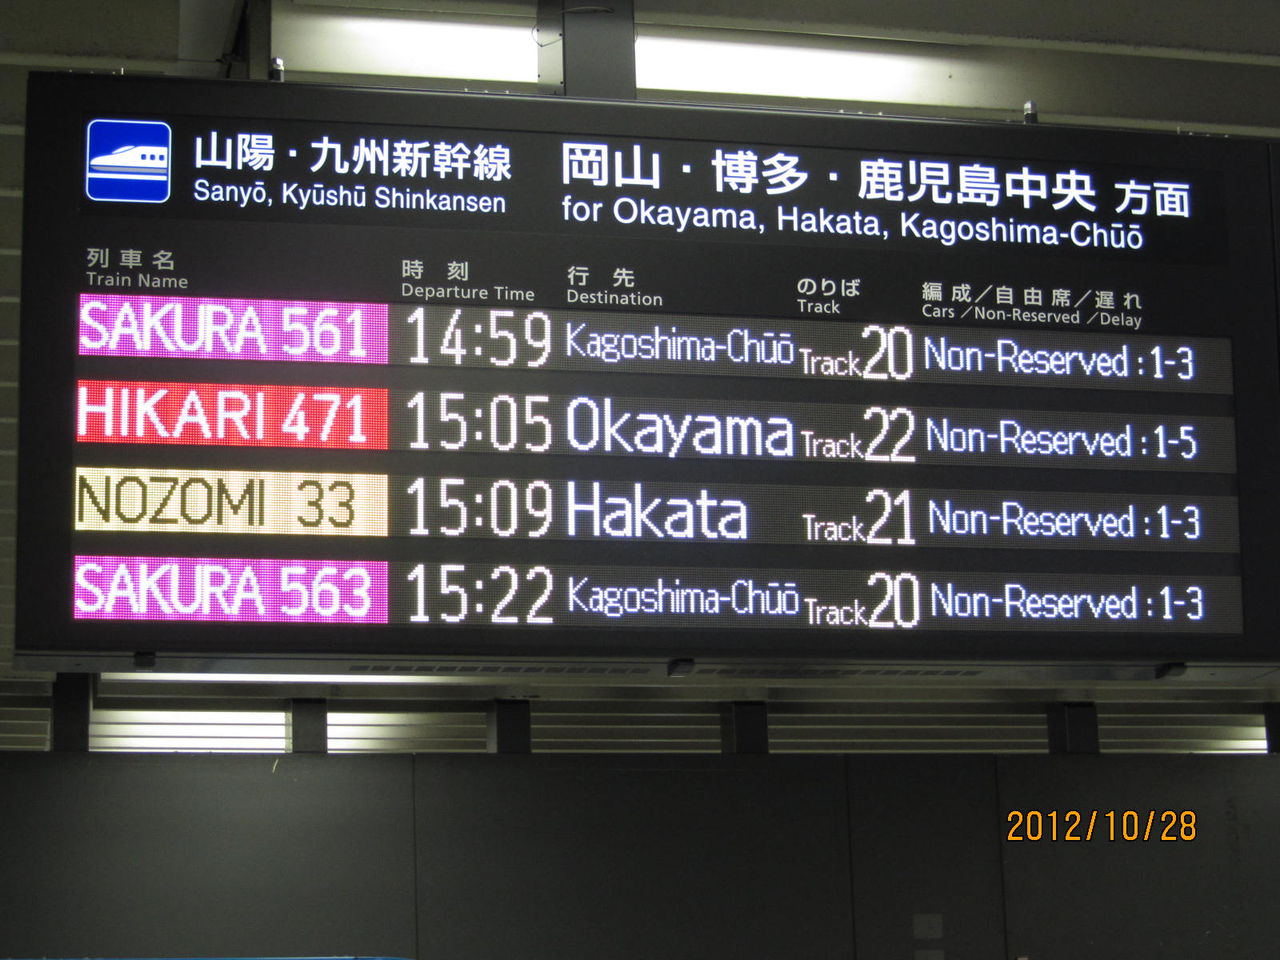 Jr西で初 新大阪駅に新幹線のフルカラーled発車標が設置される 12年8月 関西のjrへようこそ